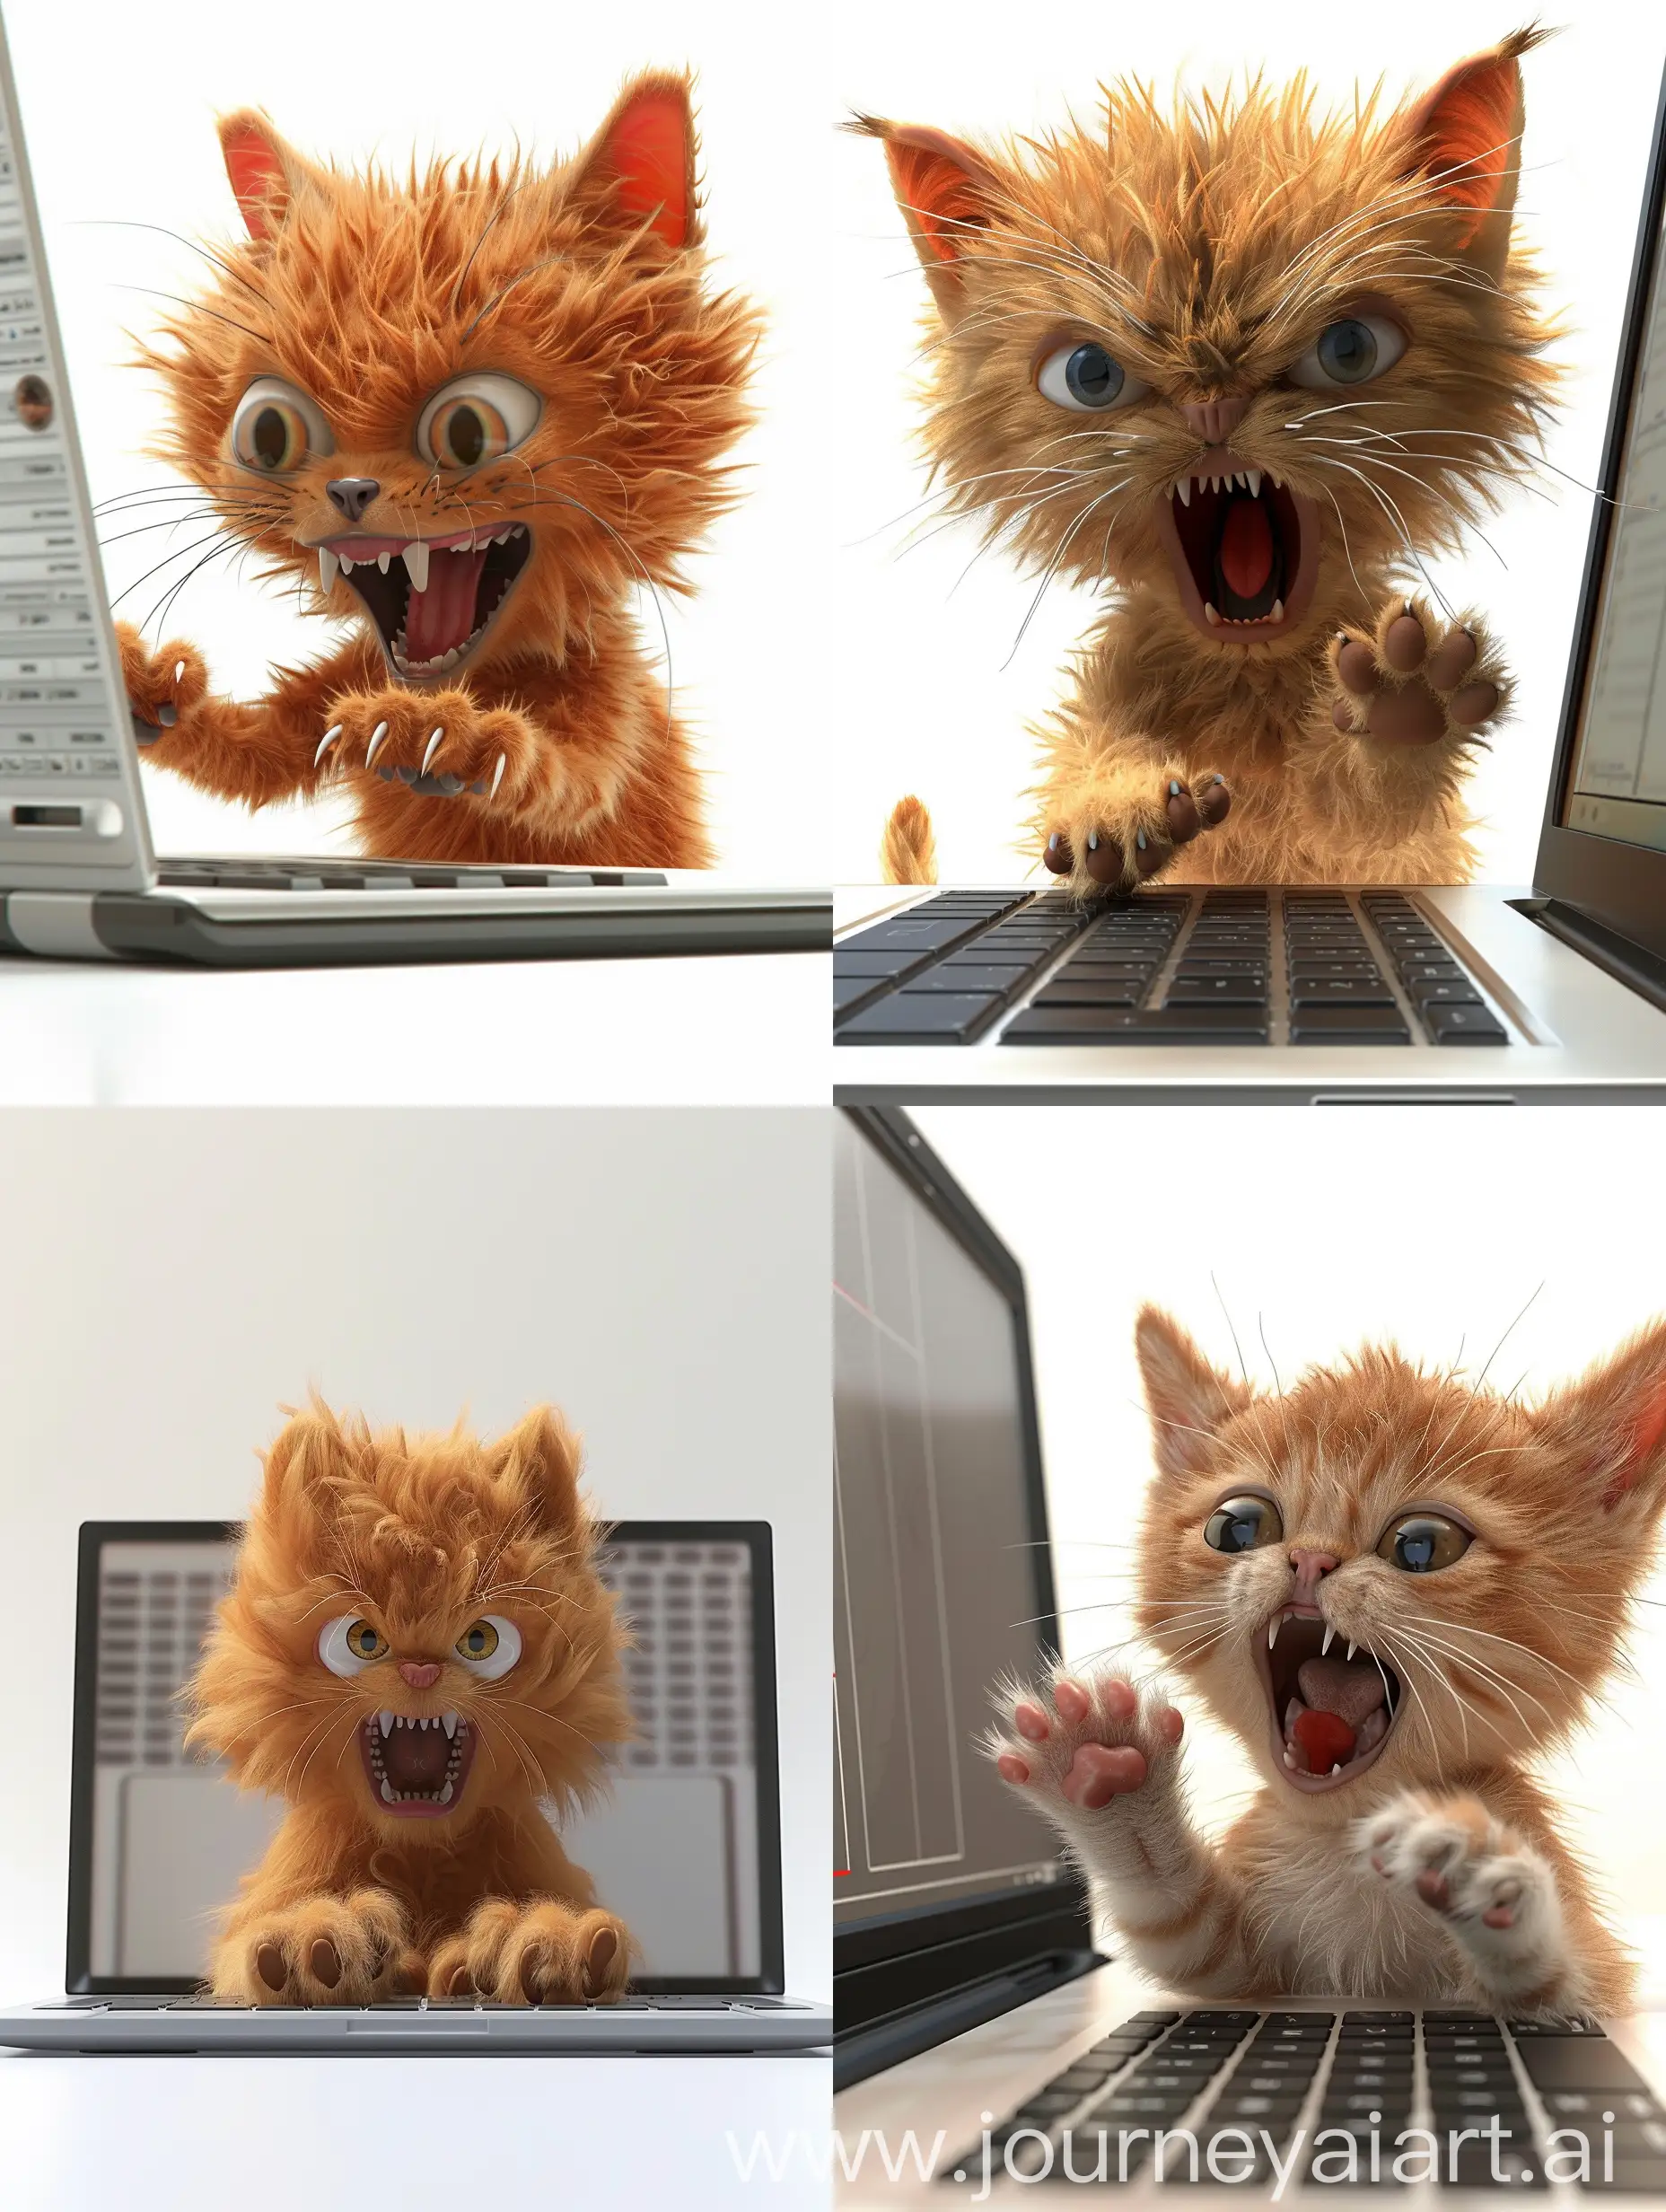 爱宠大机密风格，渲染，3D效果，一只超可爱的小橘猫，毛茸茸，坐在笔记本电脑前面对屏幕，用爪子敲打着键盘，大大的眼睛，张大了嘴巴，生气的样子，非常可爱，让人捧腹大笑，白色背景
